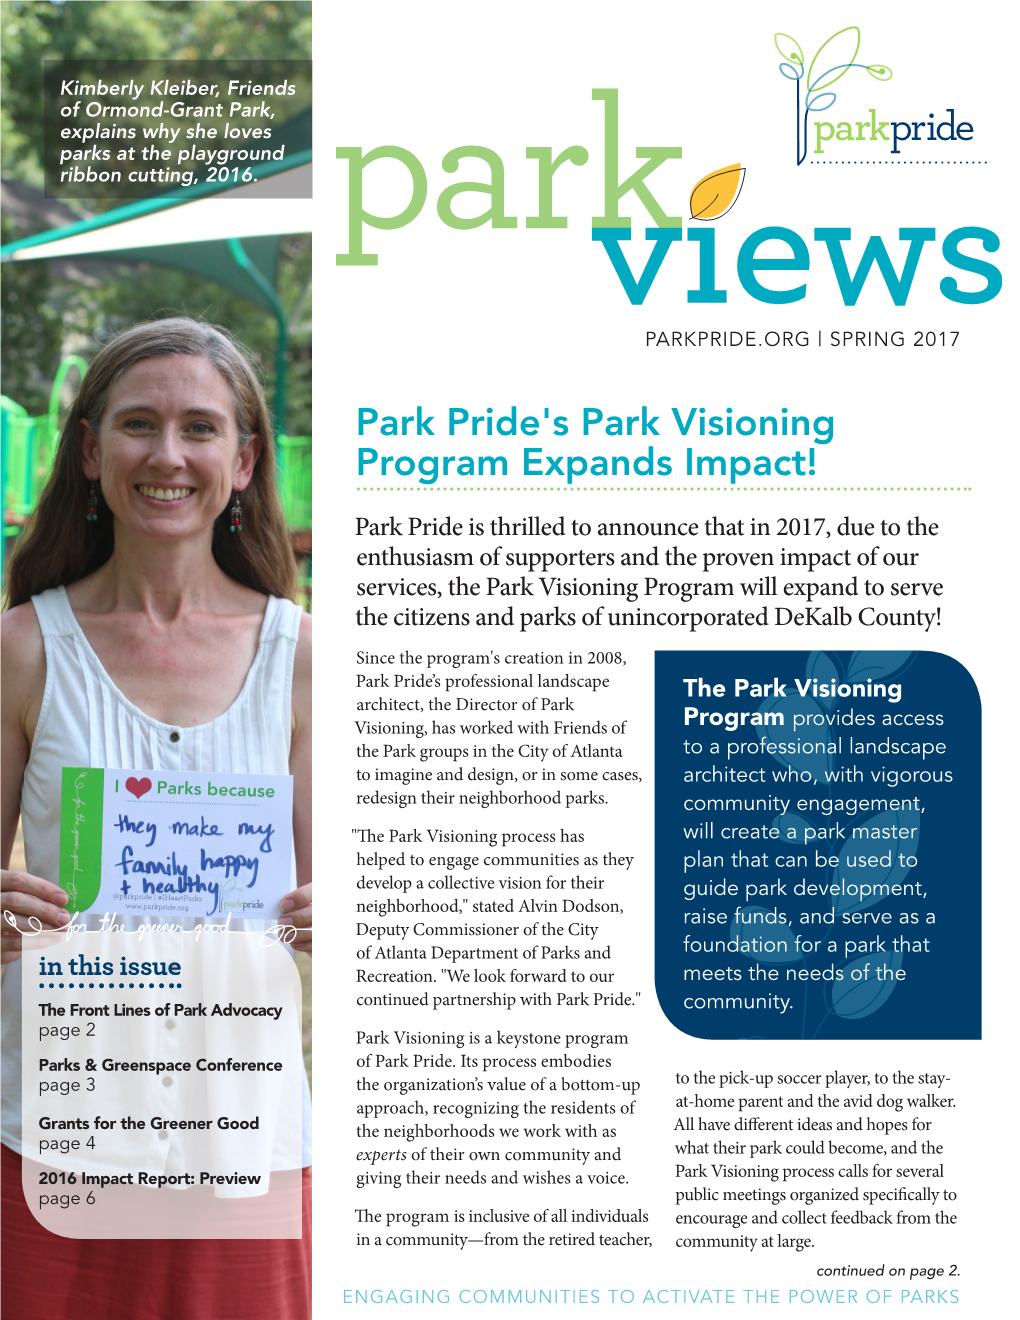 Park Pride's Park Visioning Program Expands Impact!